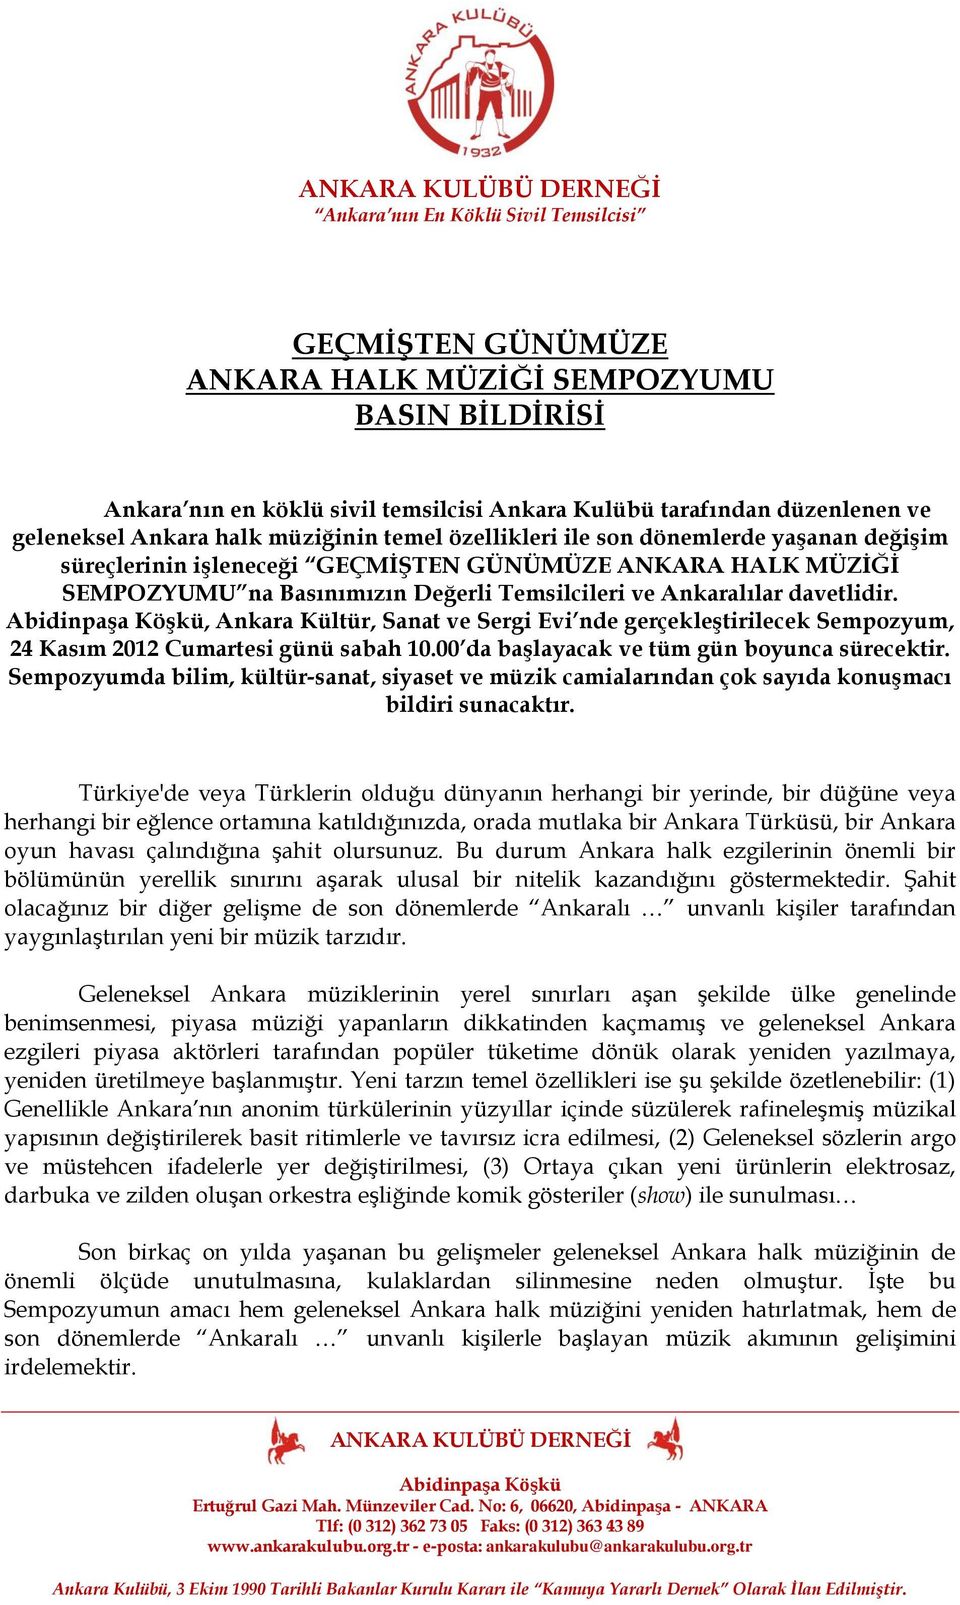 , Ankara Kültür, Sanat ve Sergi Evi nde gerçekleştirilecek Sempozyum, 24 Kasım 2012 Cumartesi günü sabah 10.00 da başlayacak ve tüm gün boyunca sürecektir.